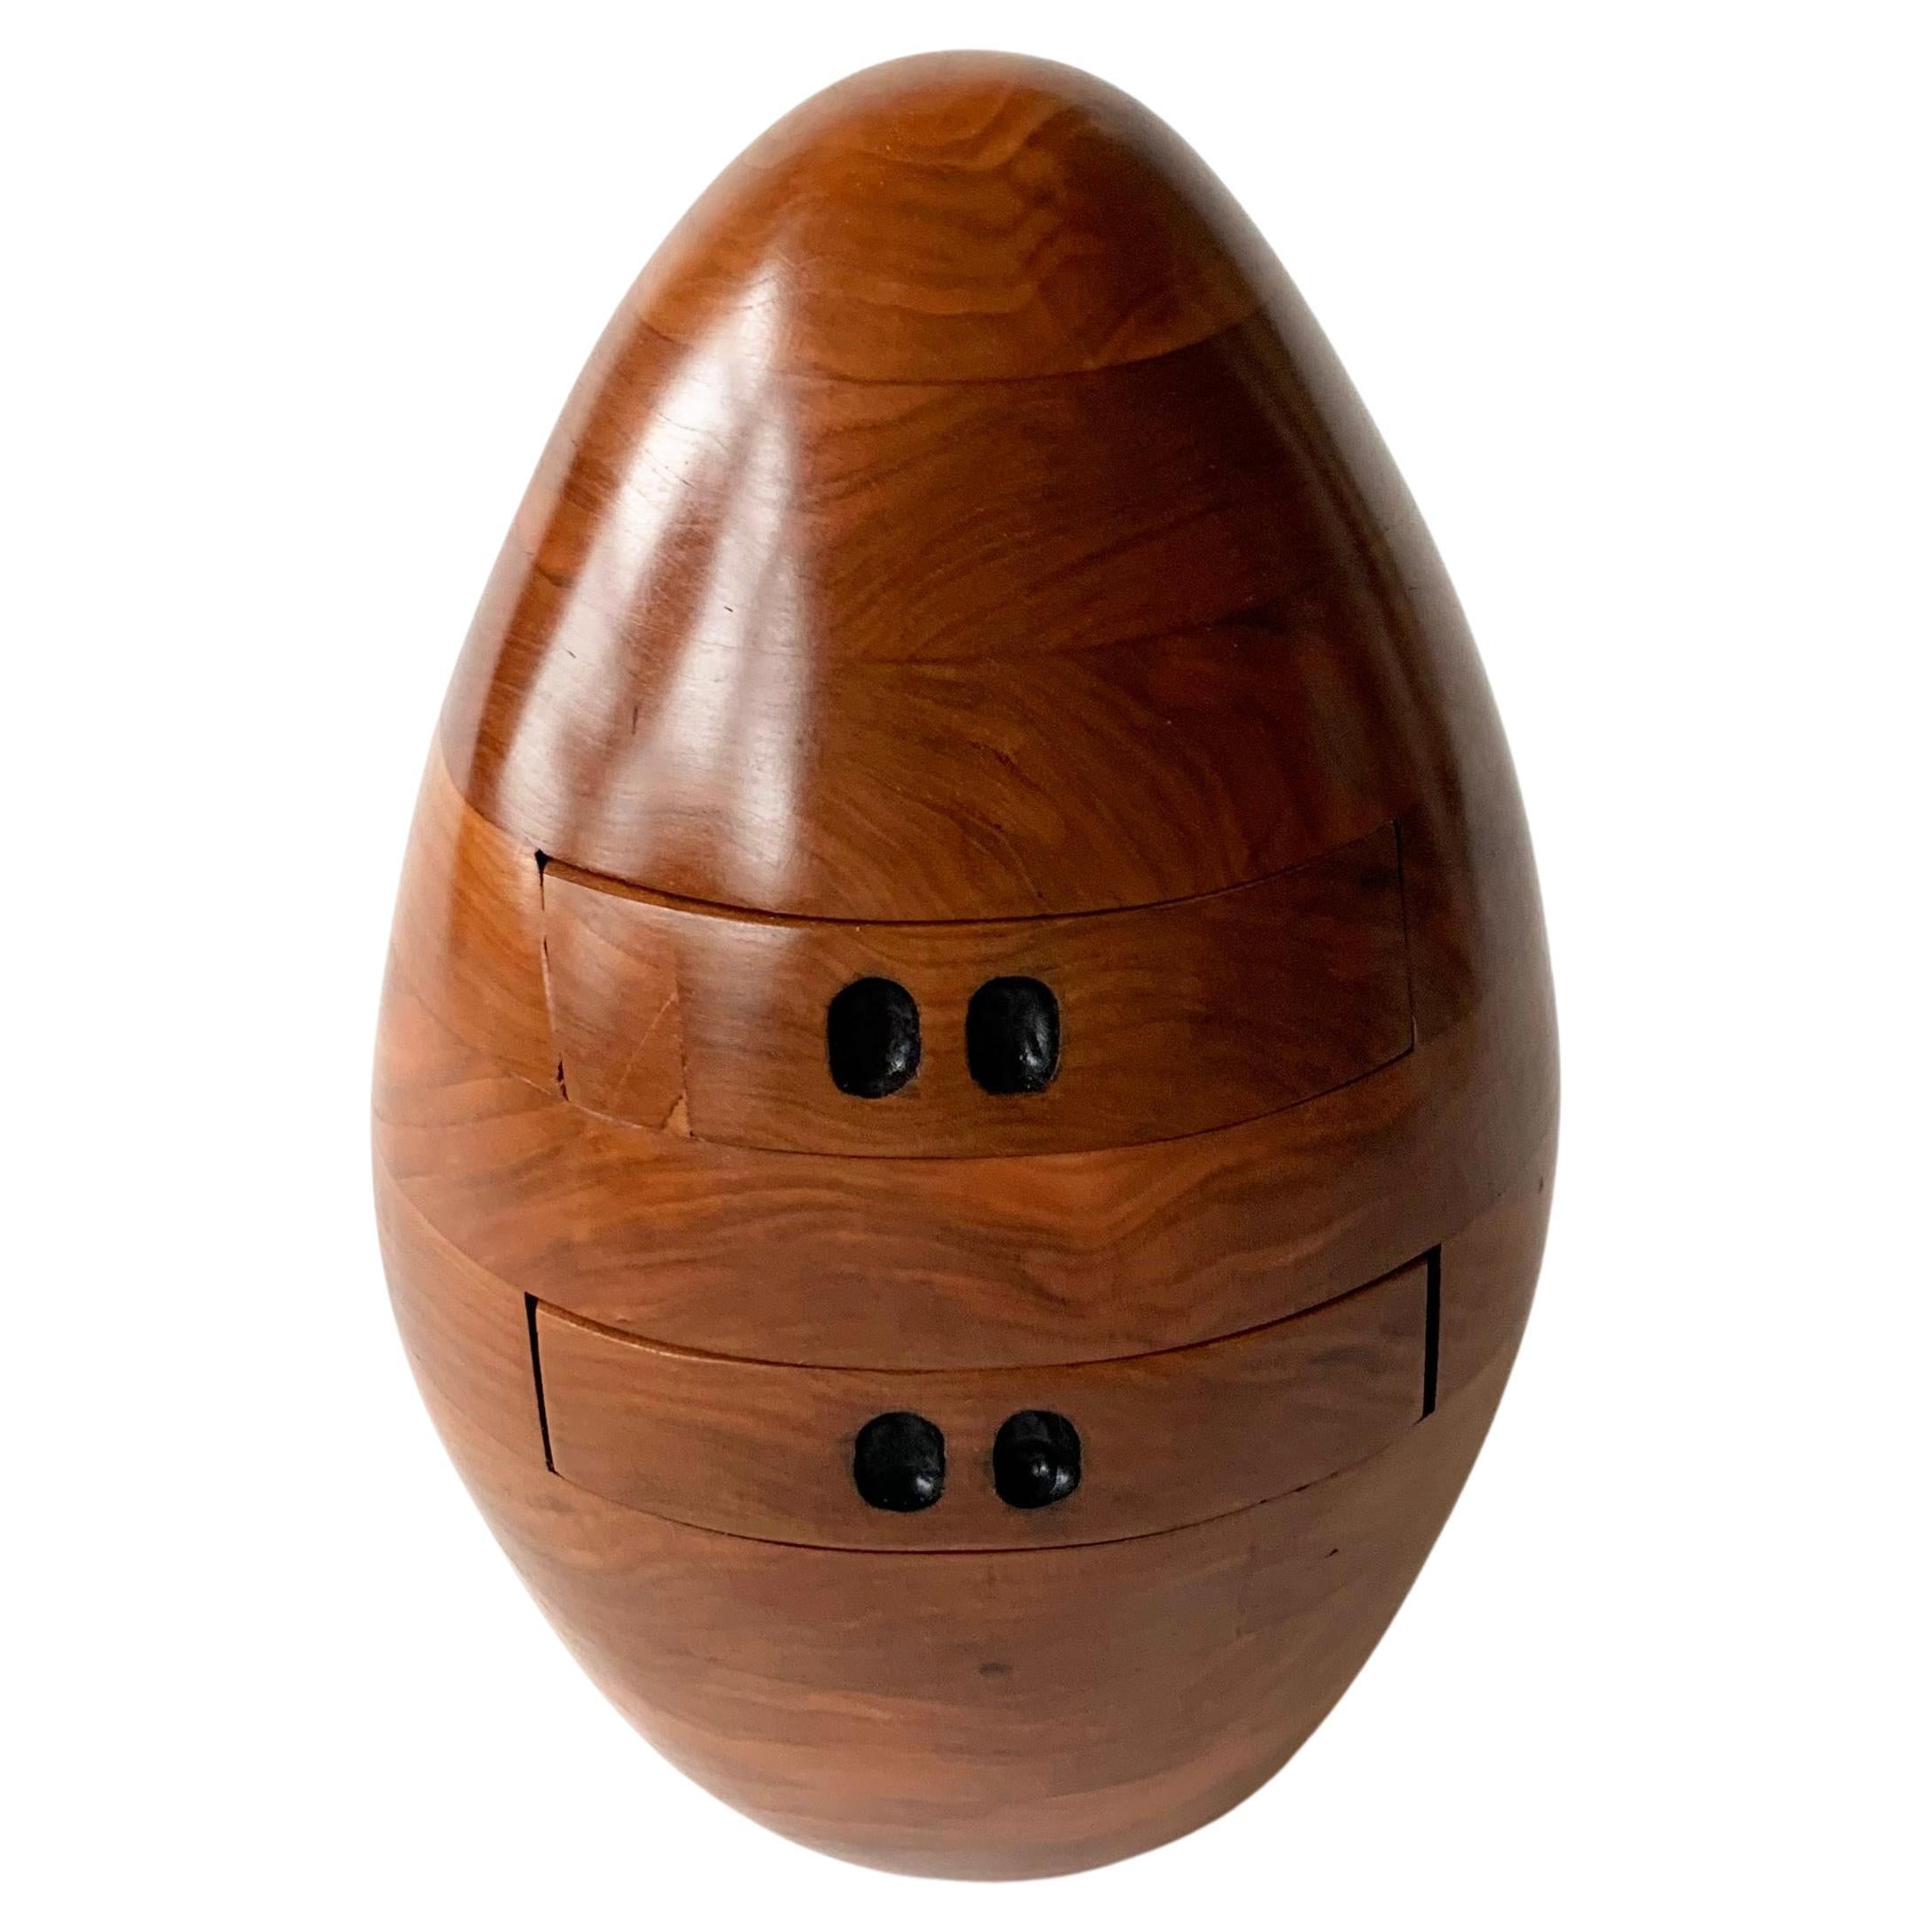 Kirschbaumholz-Ei mit mehreren Schubladen, kleine dekorative Kommode, handgeschnitzte Holzskulptur